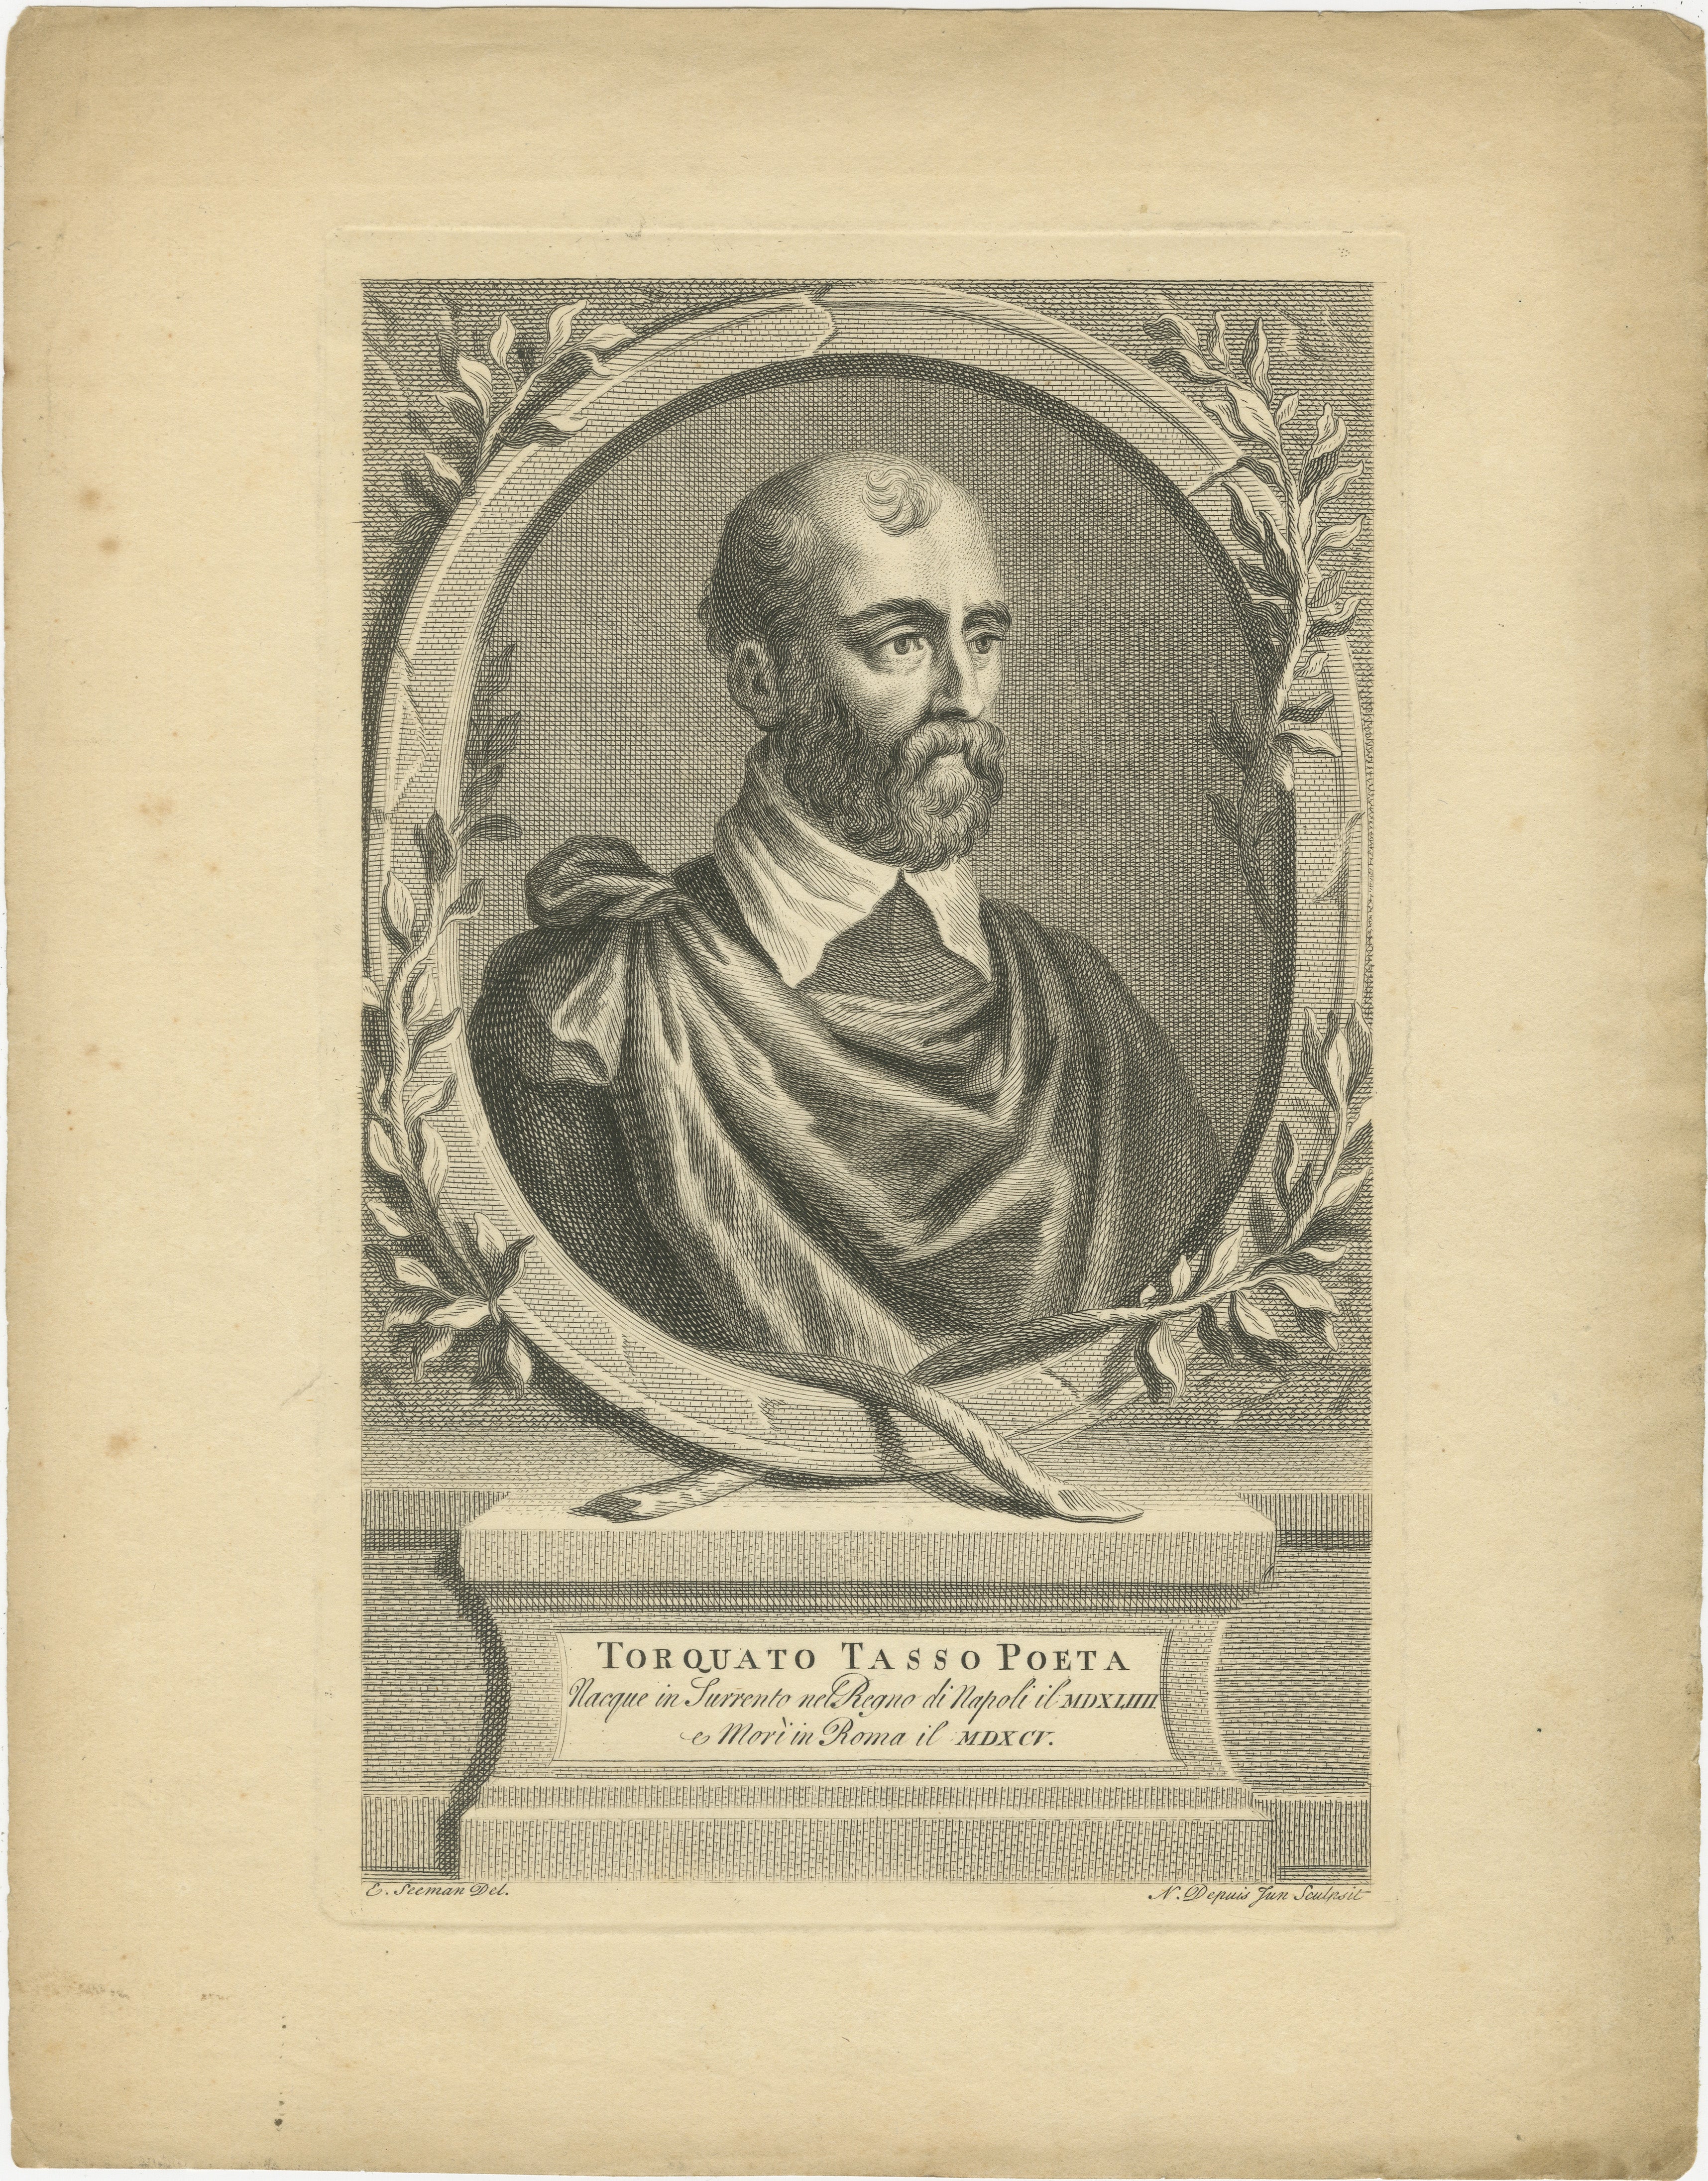 Ein Stich von Torquato Tasso, einem bedeutenden italienischen Dichter des 16. Jahrhunderts, der vor allem für sein episches Gedicht 